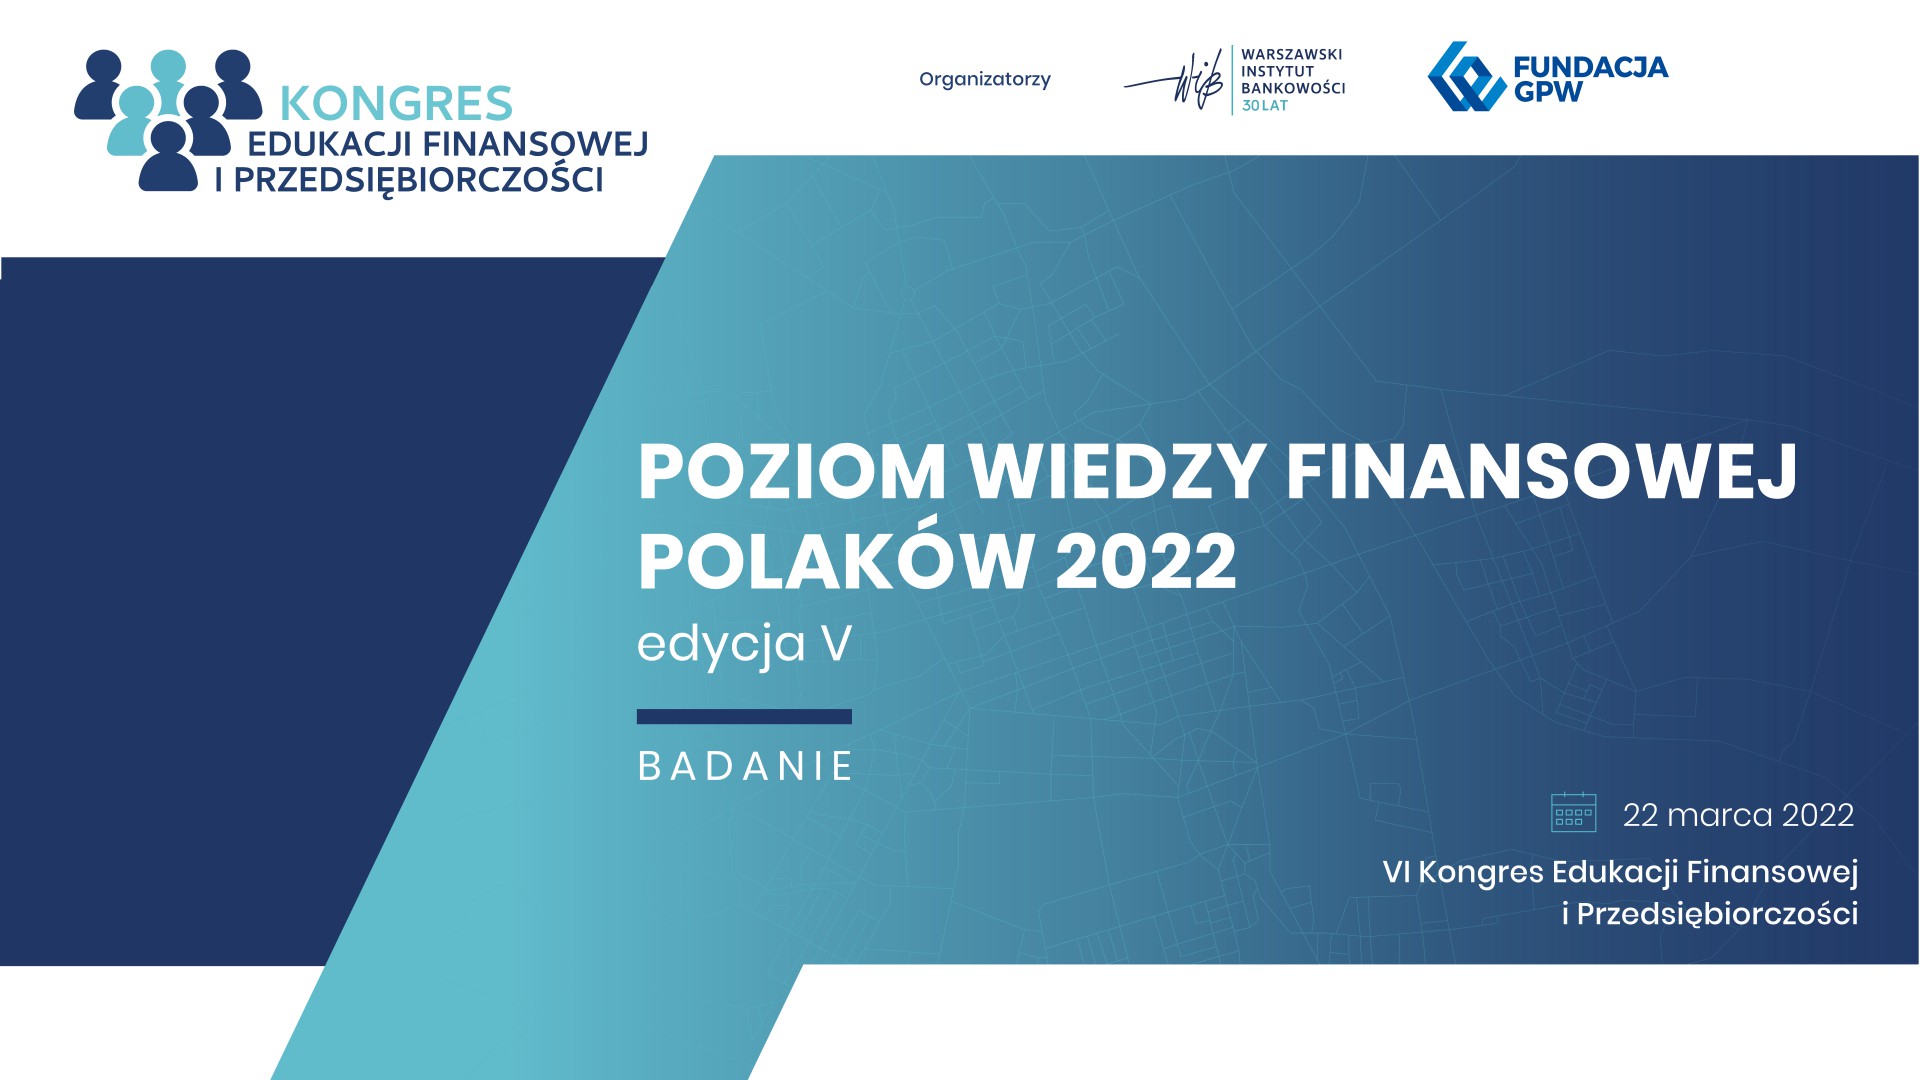 Wiedza finansowa coraz ważniejsza dla Polaków - Badanie „Poziom wiedzy finansowej Polaków 2022” - Warszawski Instytut Bankowości oraz Fundacja GPW